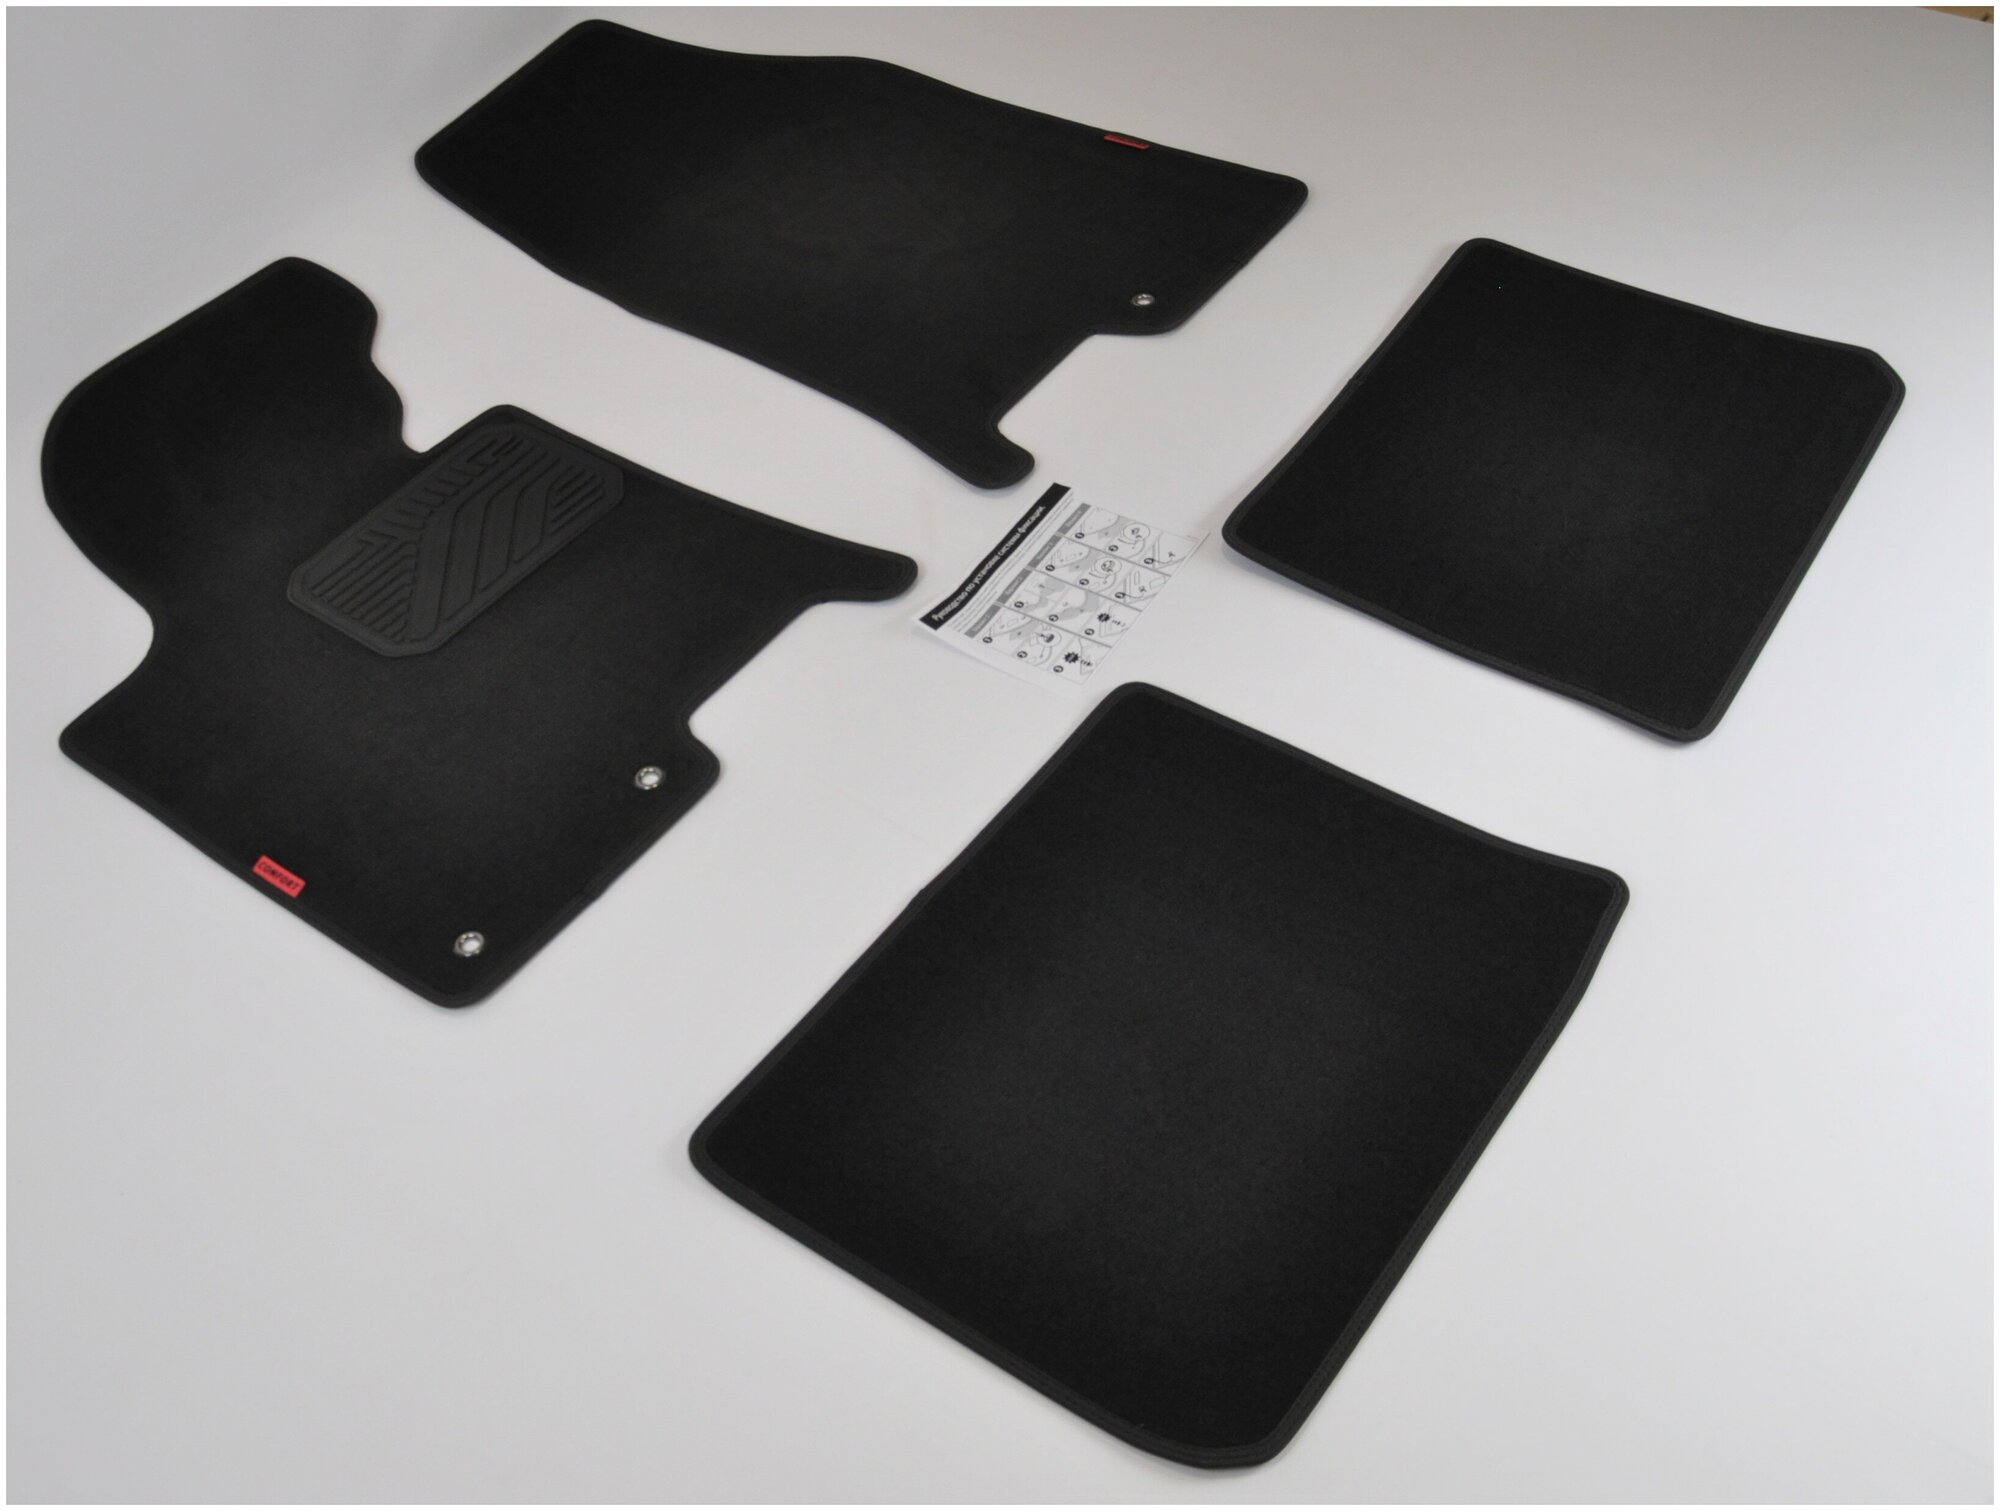 Коврики в салон текстиль комплект для Hyundai I 40 седан универсал VF 2011- на резиновой основе с крепежом.